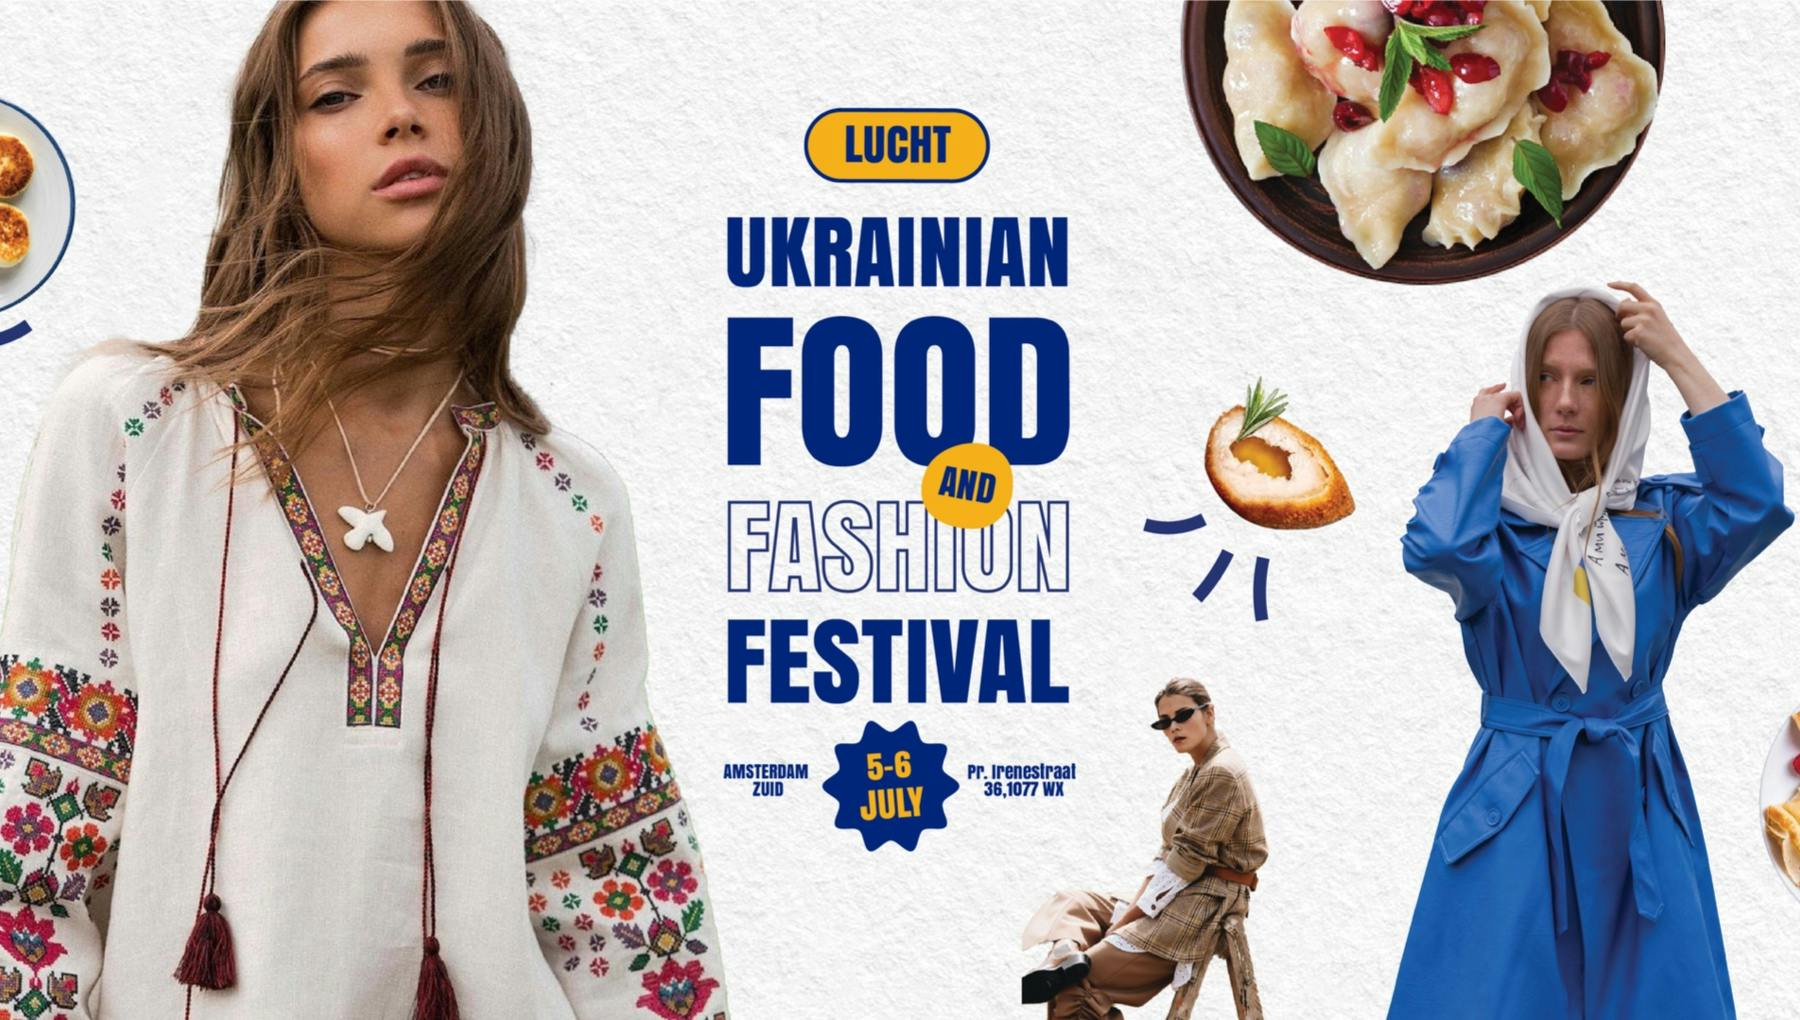 Ukrainian Food and Fashion Festival